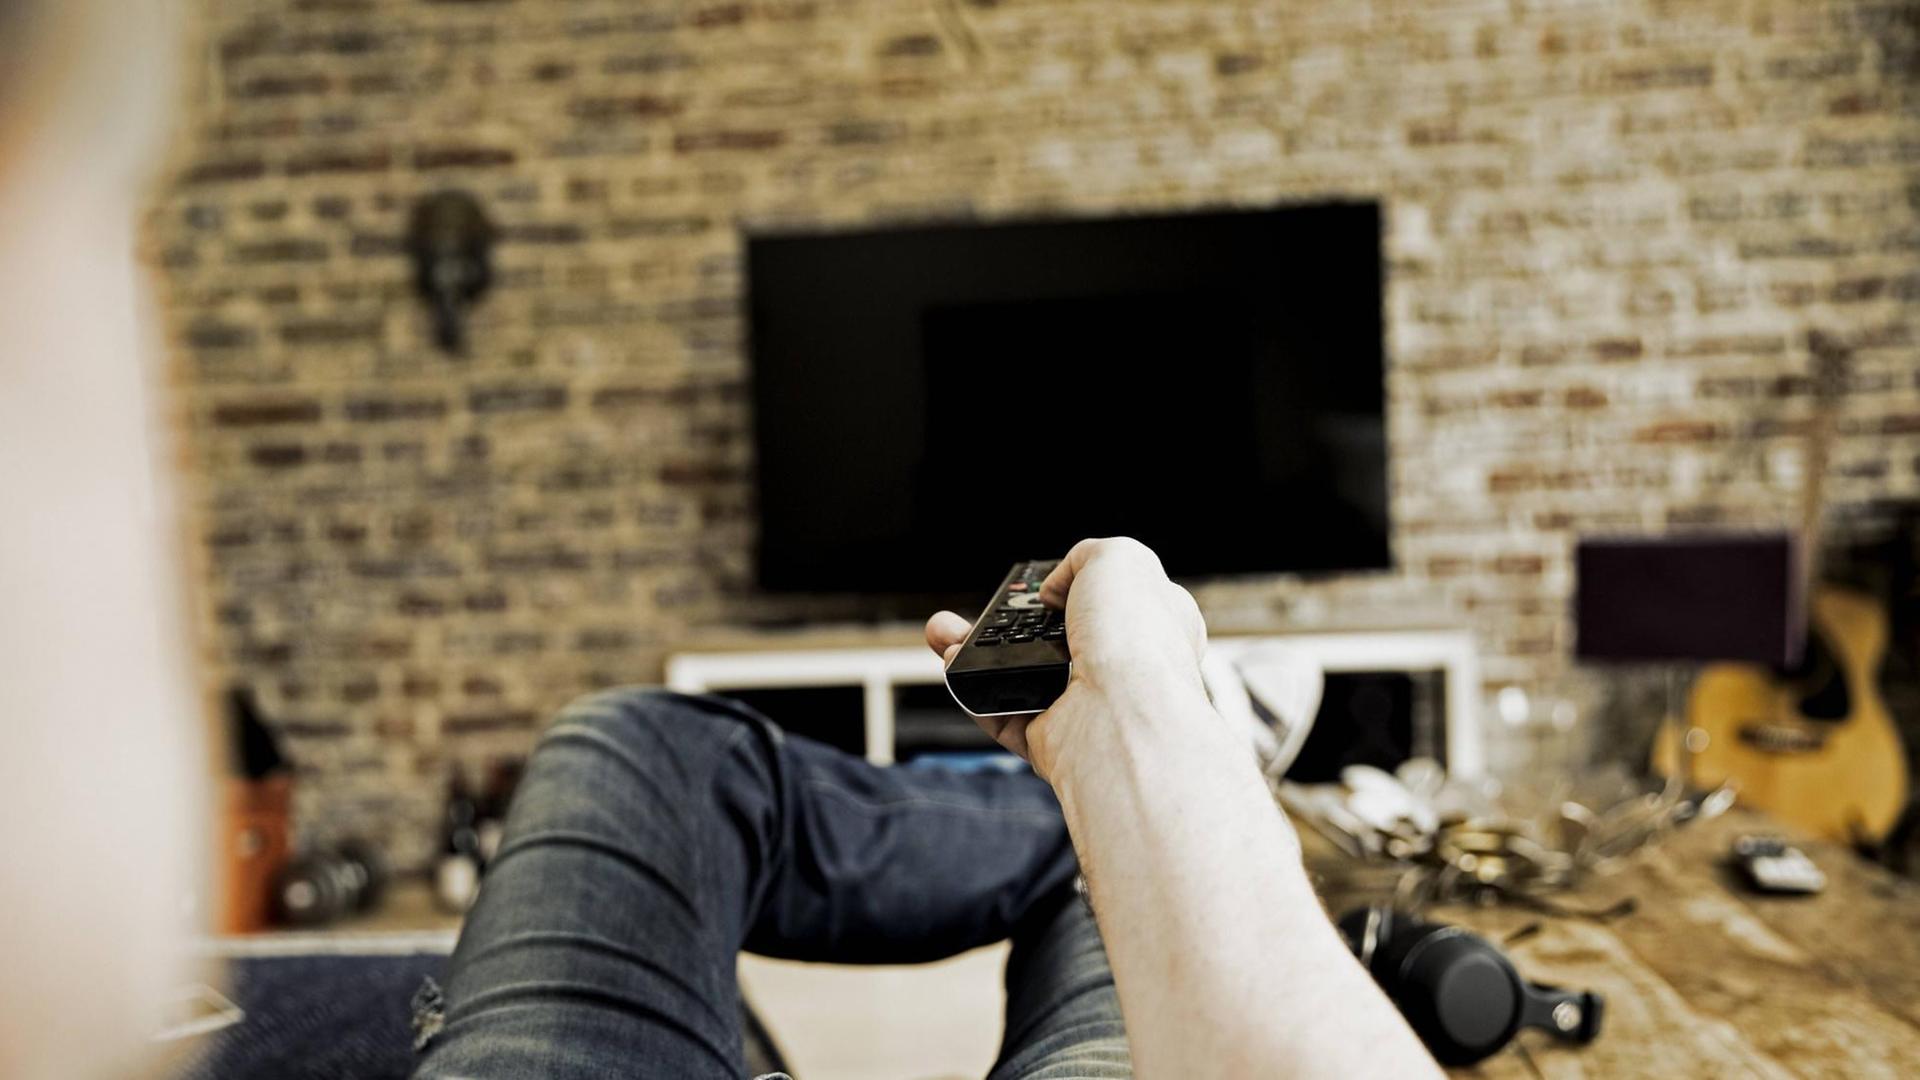 Ein Mann liegt auf einem Sofa und zeigt mit einer Fernbedienung auf einen Fernseher, der an der Wand angebracht ist